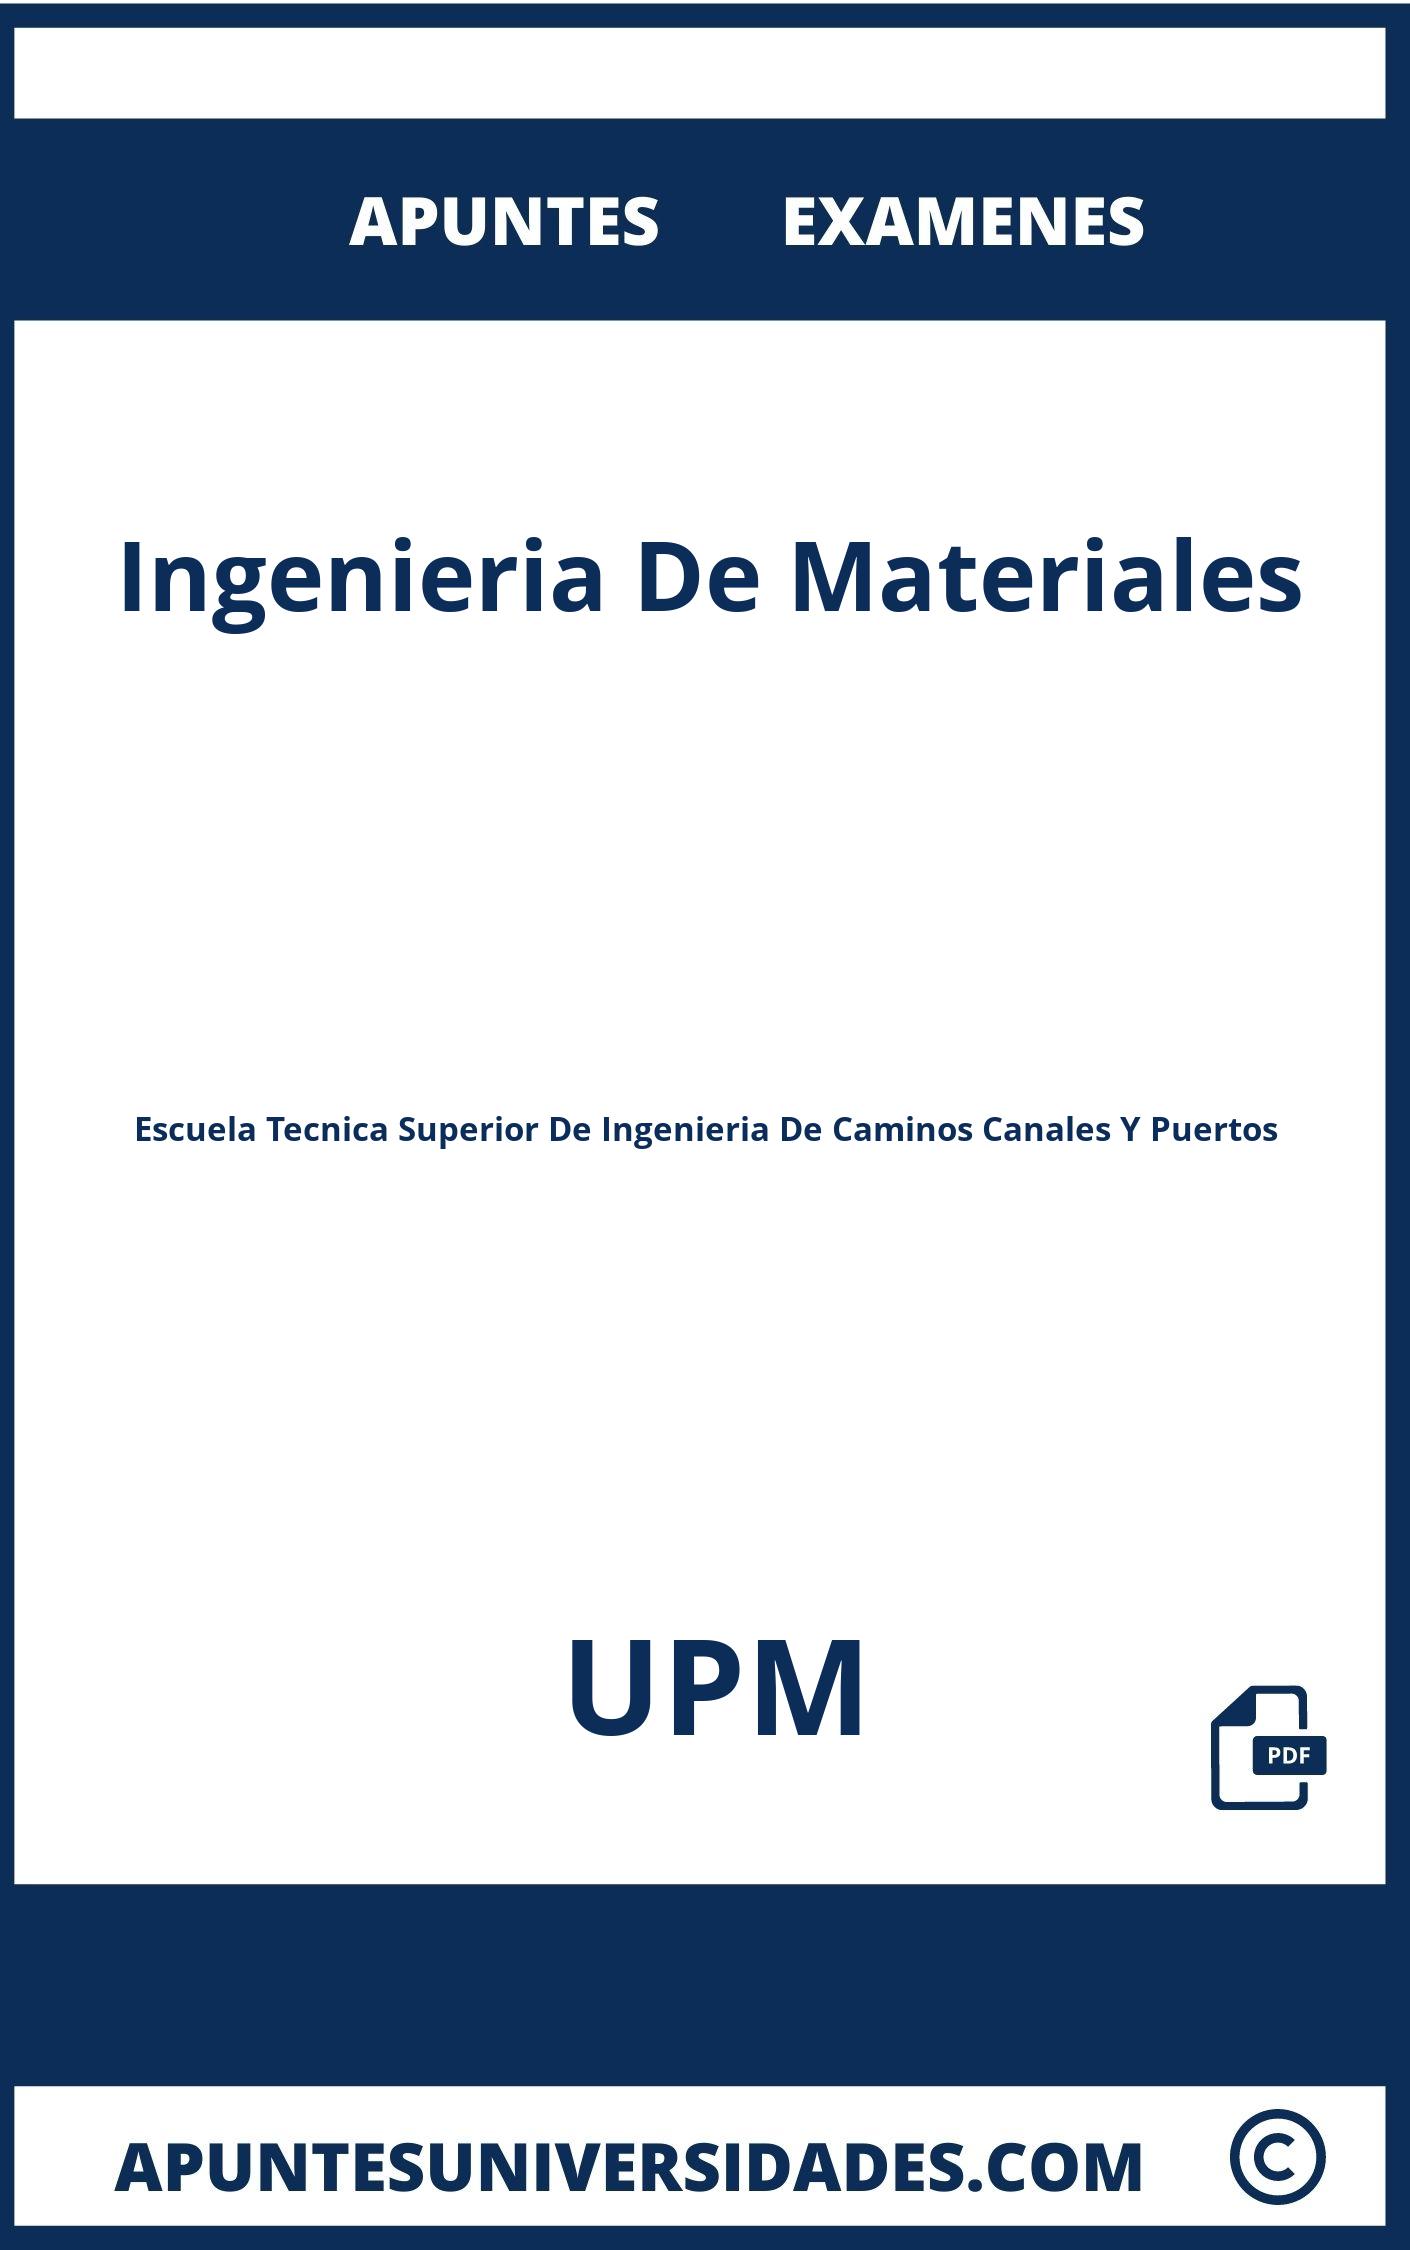 Apuntes y Examenes Ingenieria De Materiales UPM